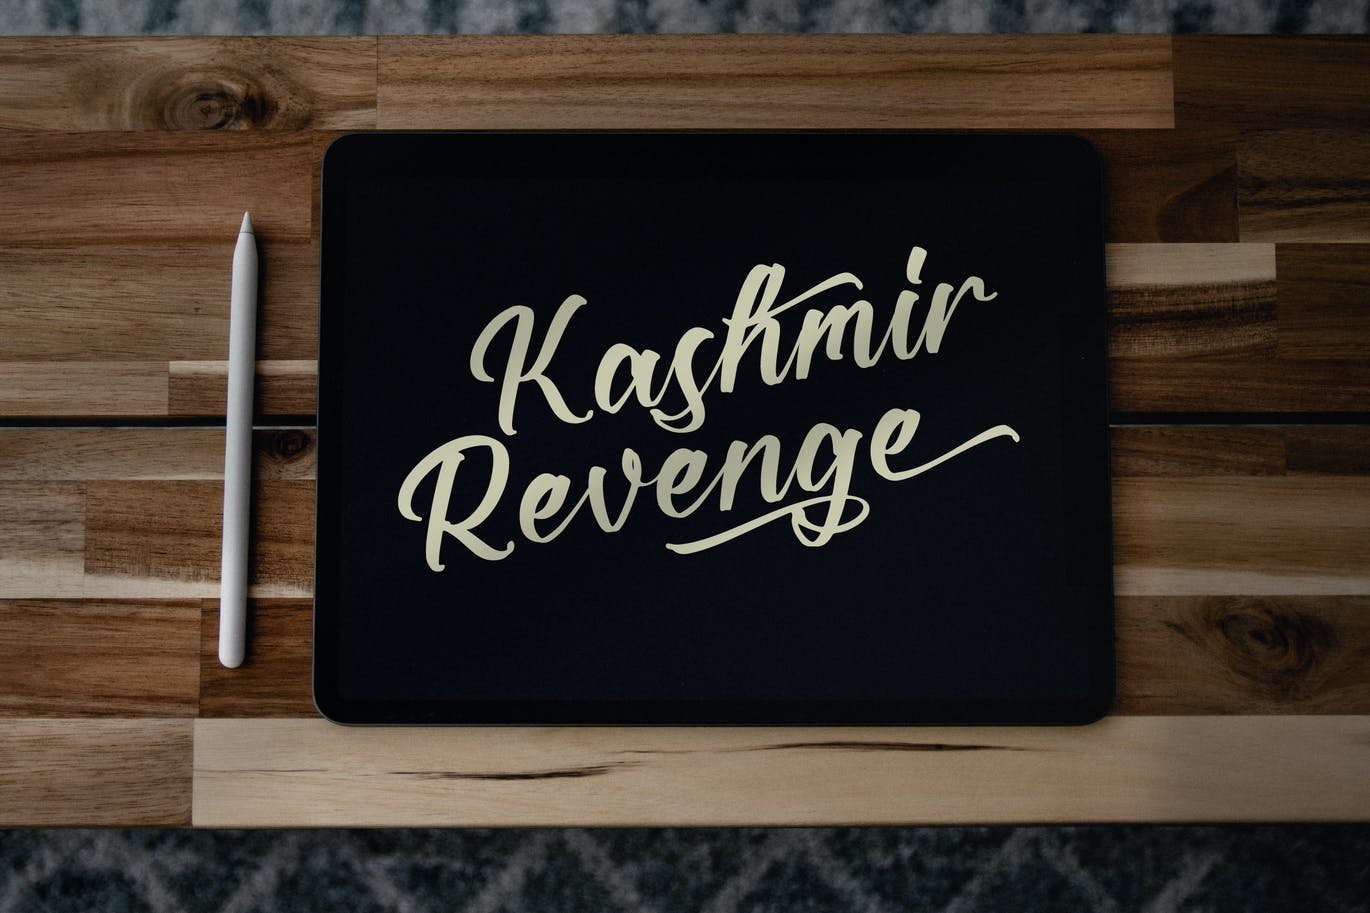 现代艺术书法字体素材 Kashmir Revenge Calligraphy Font 设计素材 第8张